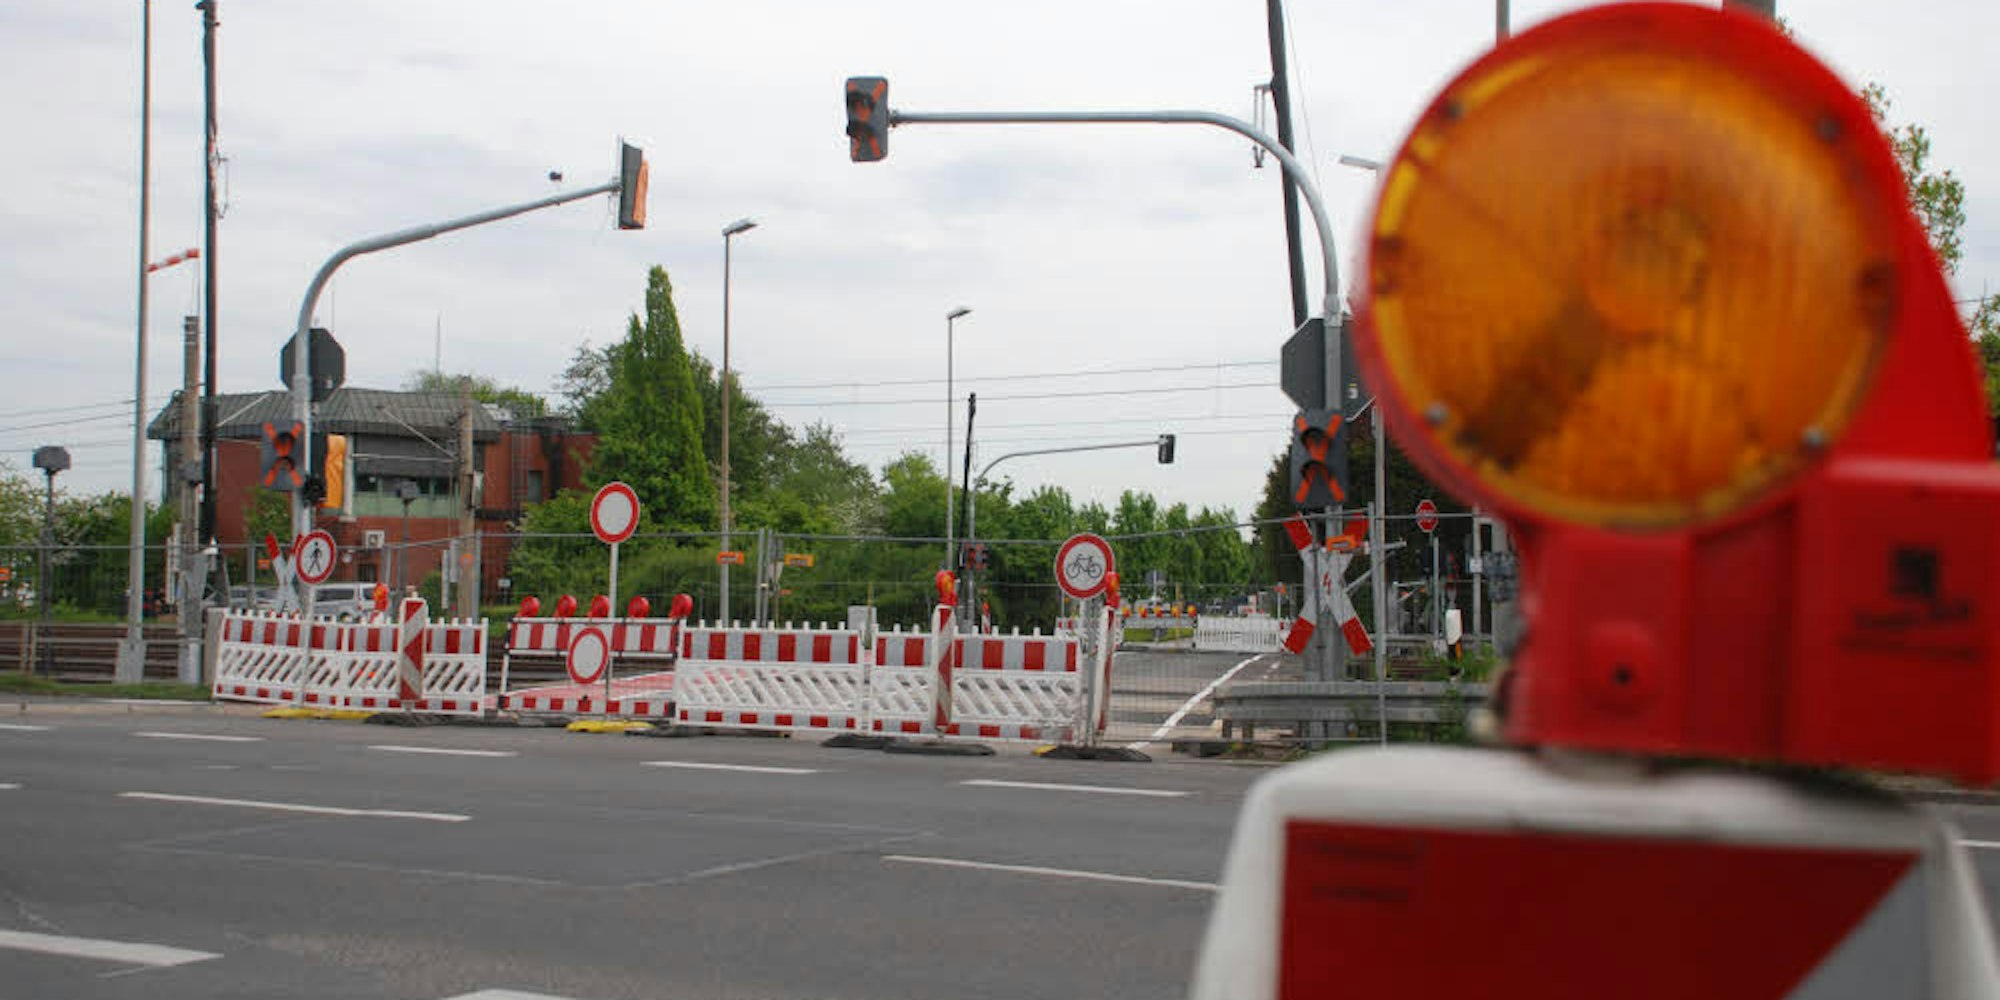 Zusätzliche Lichtzeichen für den Notfall werden an den Bahnschranken in der Ursulastraße installiert.